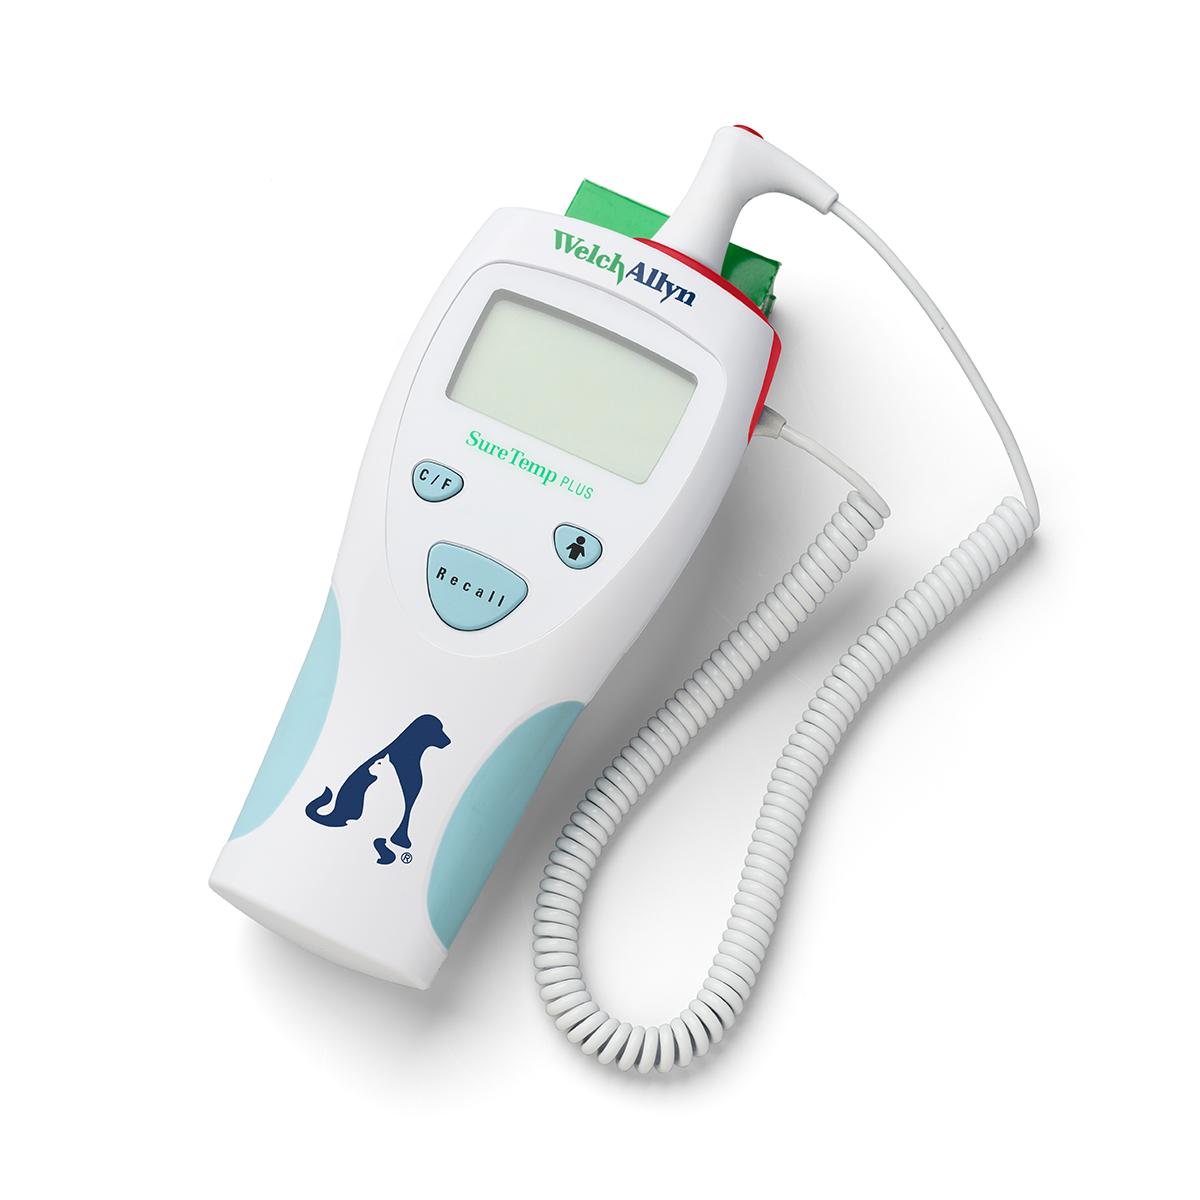 Thermomètre vétérinaire électronique SureTemp Plus 690 de Welch Allyn